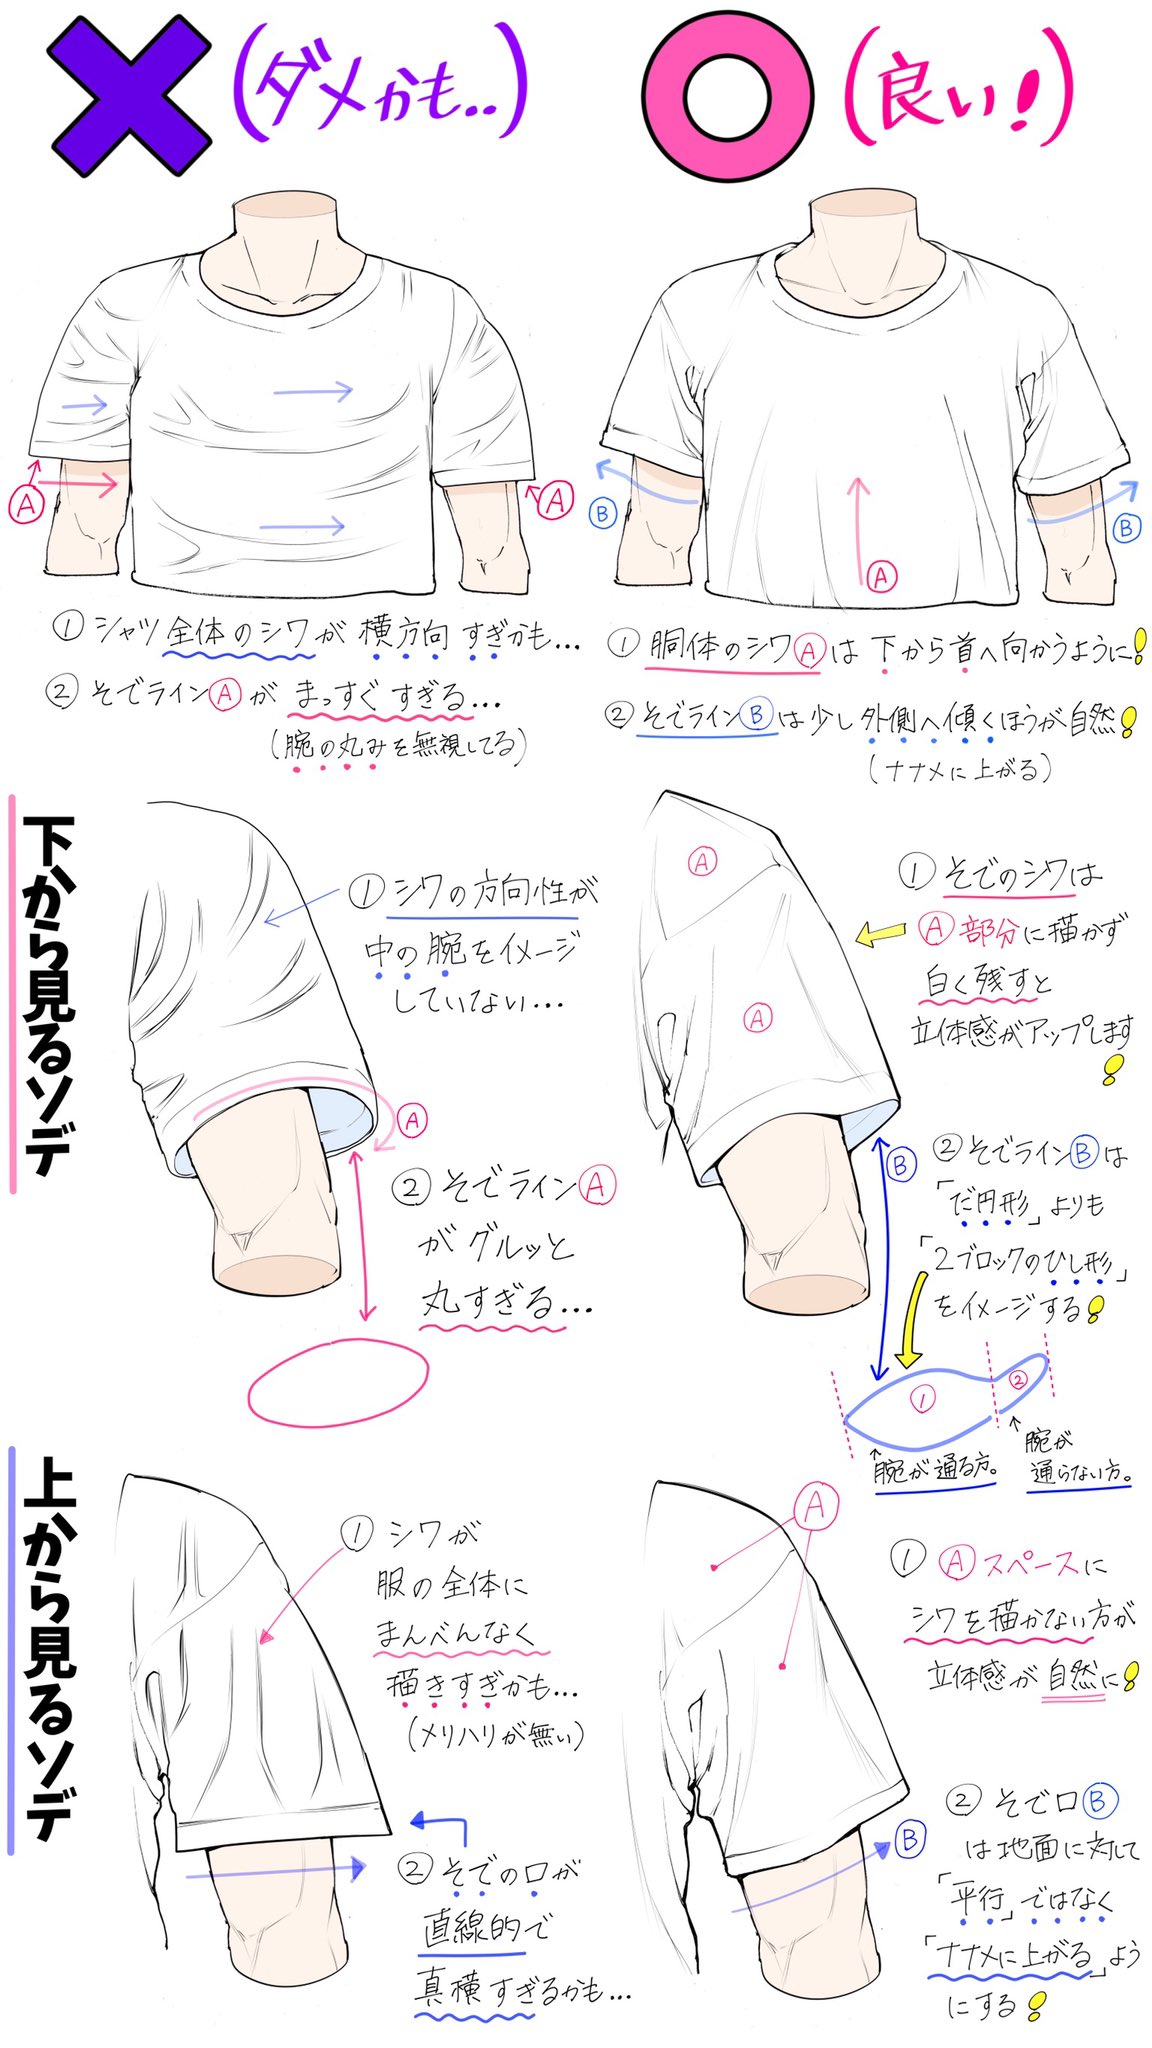 Twitter 上的 吉村拓也 イラスト講座 Tシャツのシワ感が苦手で描けない シャツの構図アングルが難しい って人ほど上達しやすい Tシャツ服男子の描き方 講座 T Co Poj1lw50qf Twitter